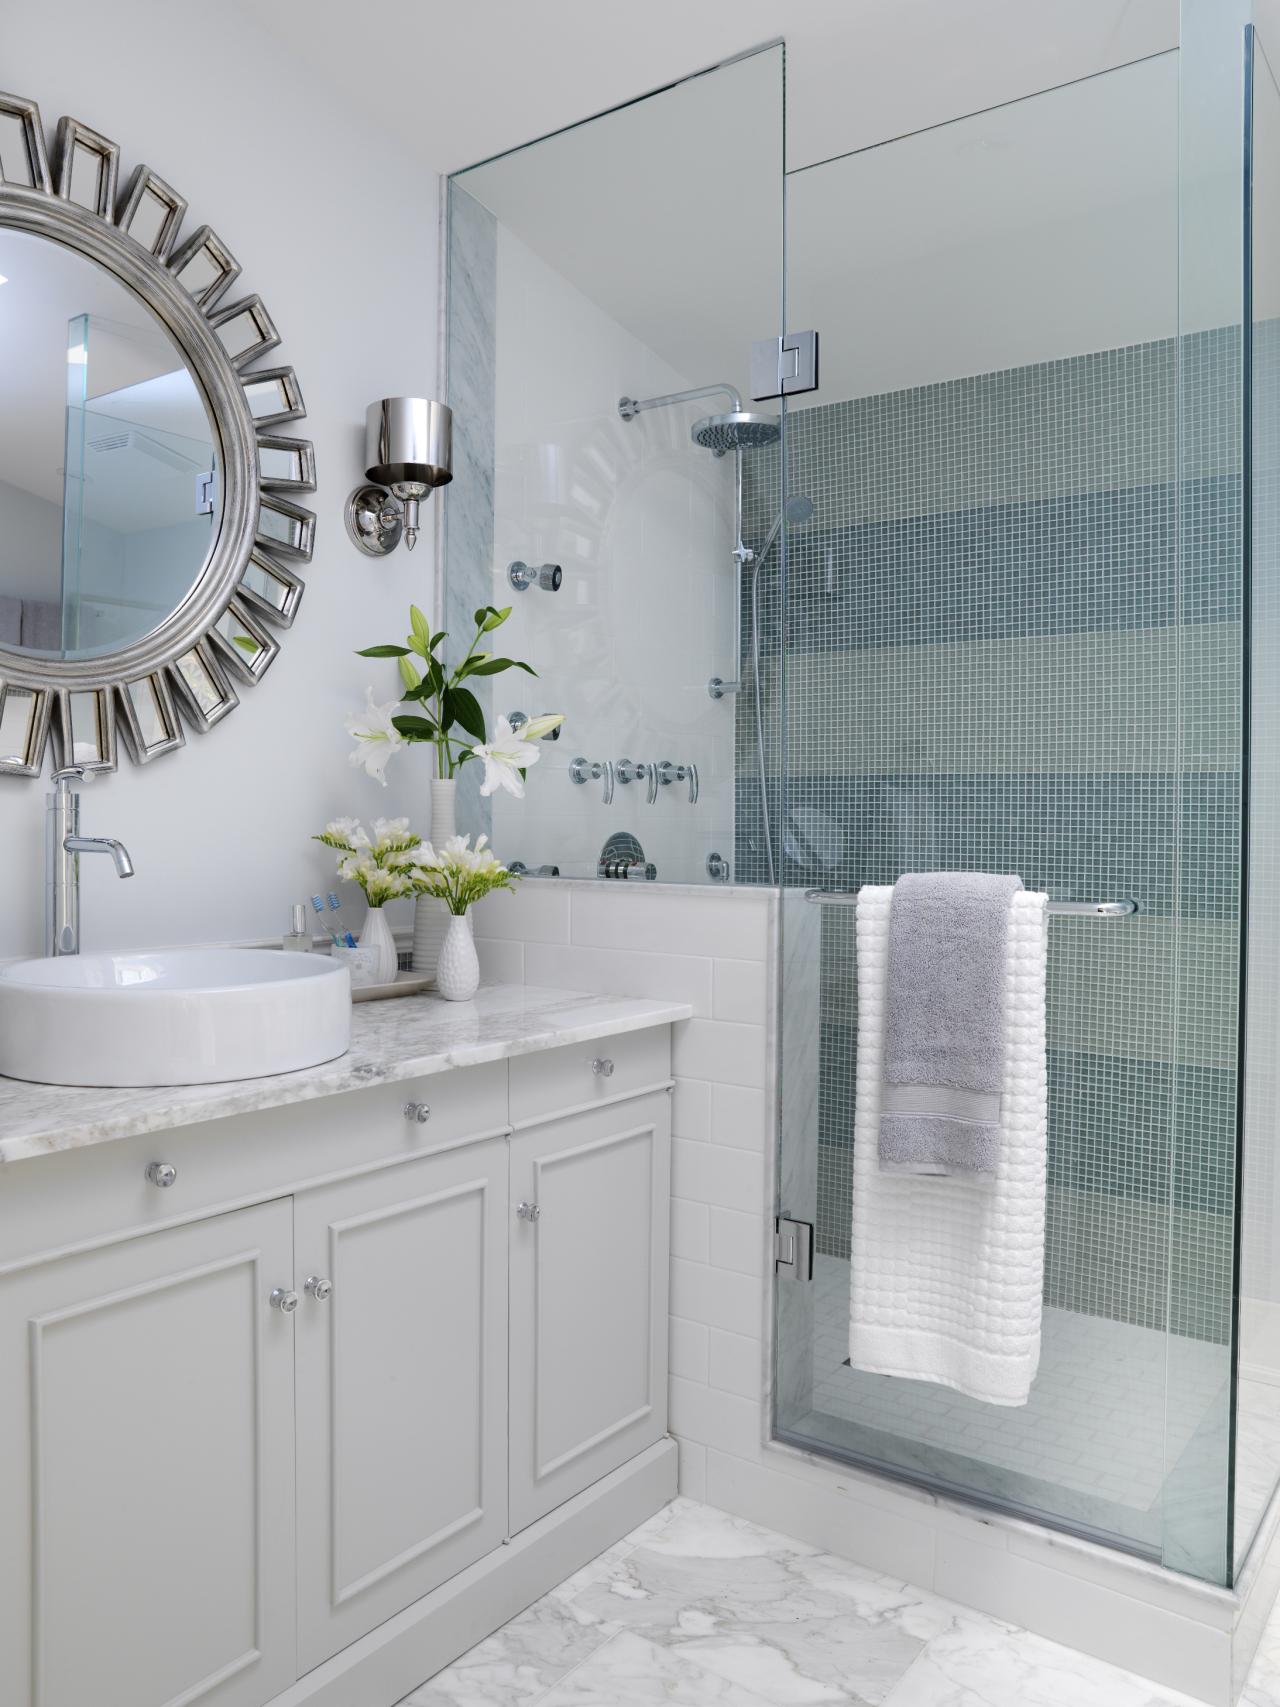 9 Bold Bathroom Tile Designs HGTV s Decorating & Design Blog